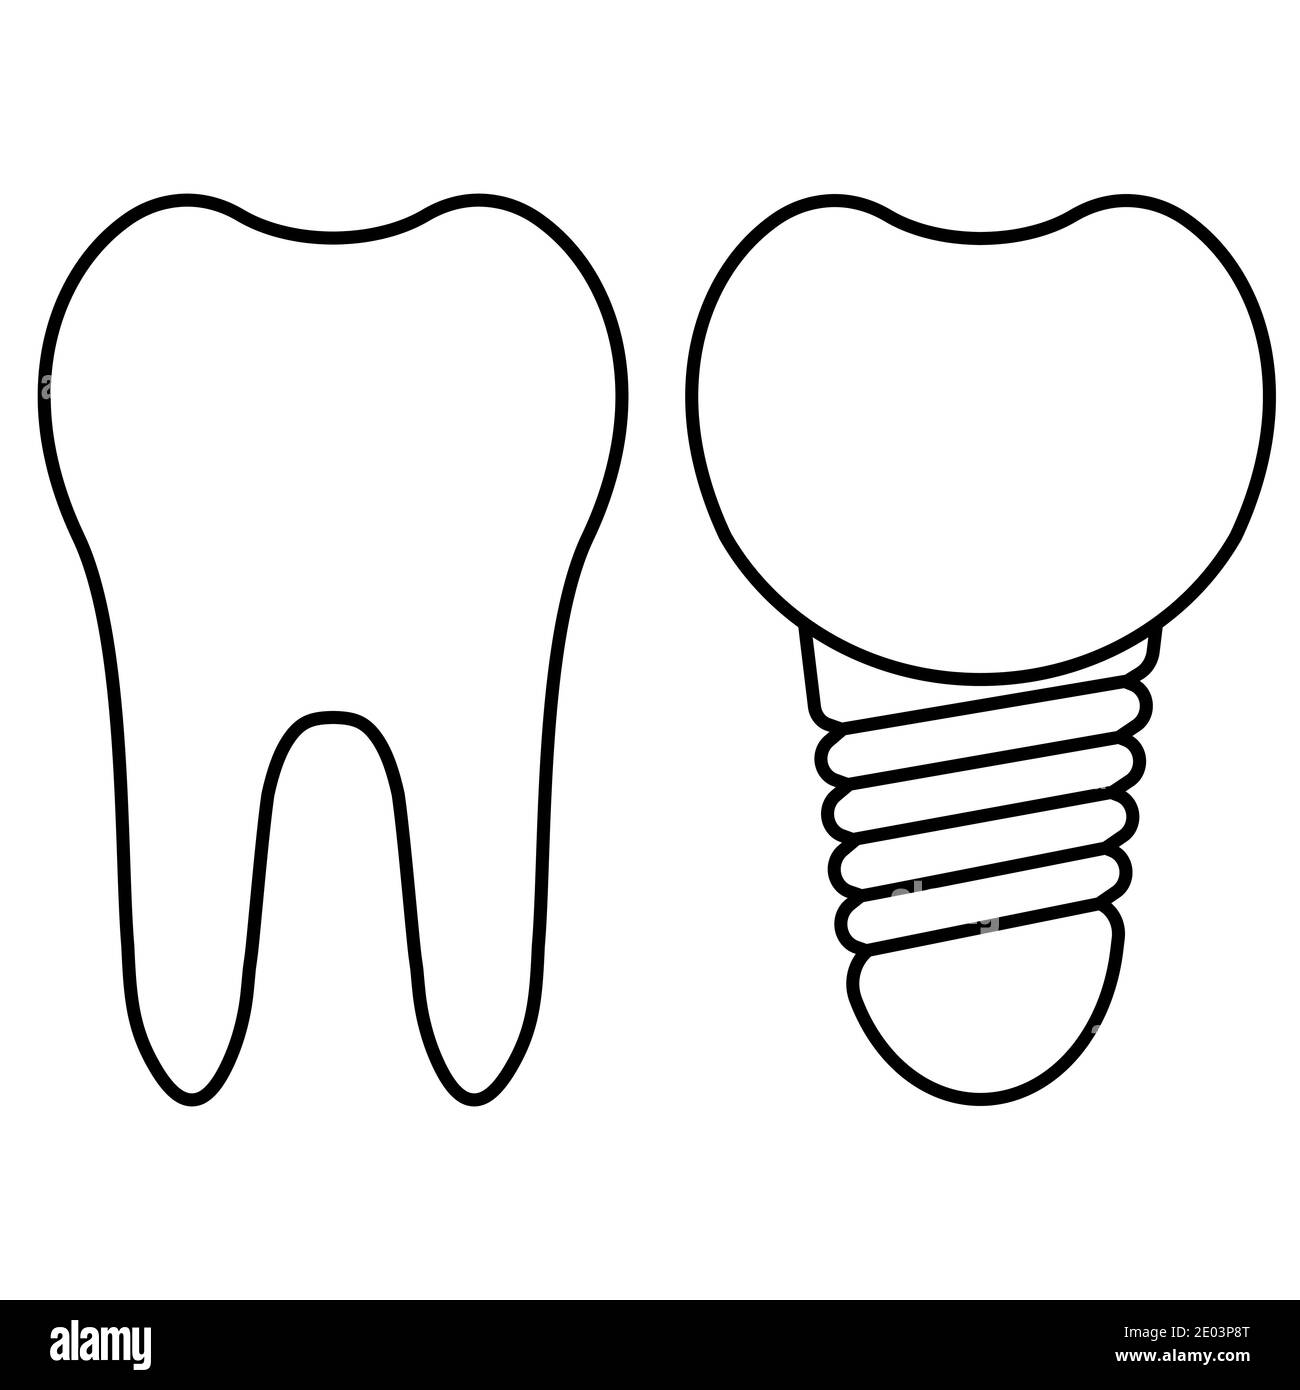 Chirurgia dentale. Taglio dell'impianto e dente sano. Corona di impianto dentale vettoriale realistica. Elementi stomatologici Illustrazione Vettoriale